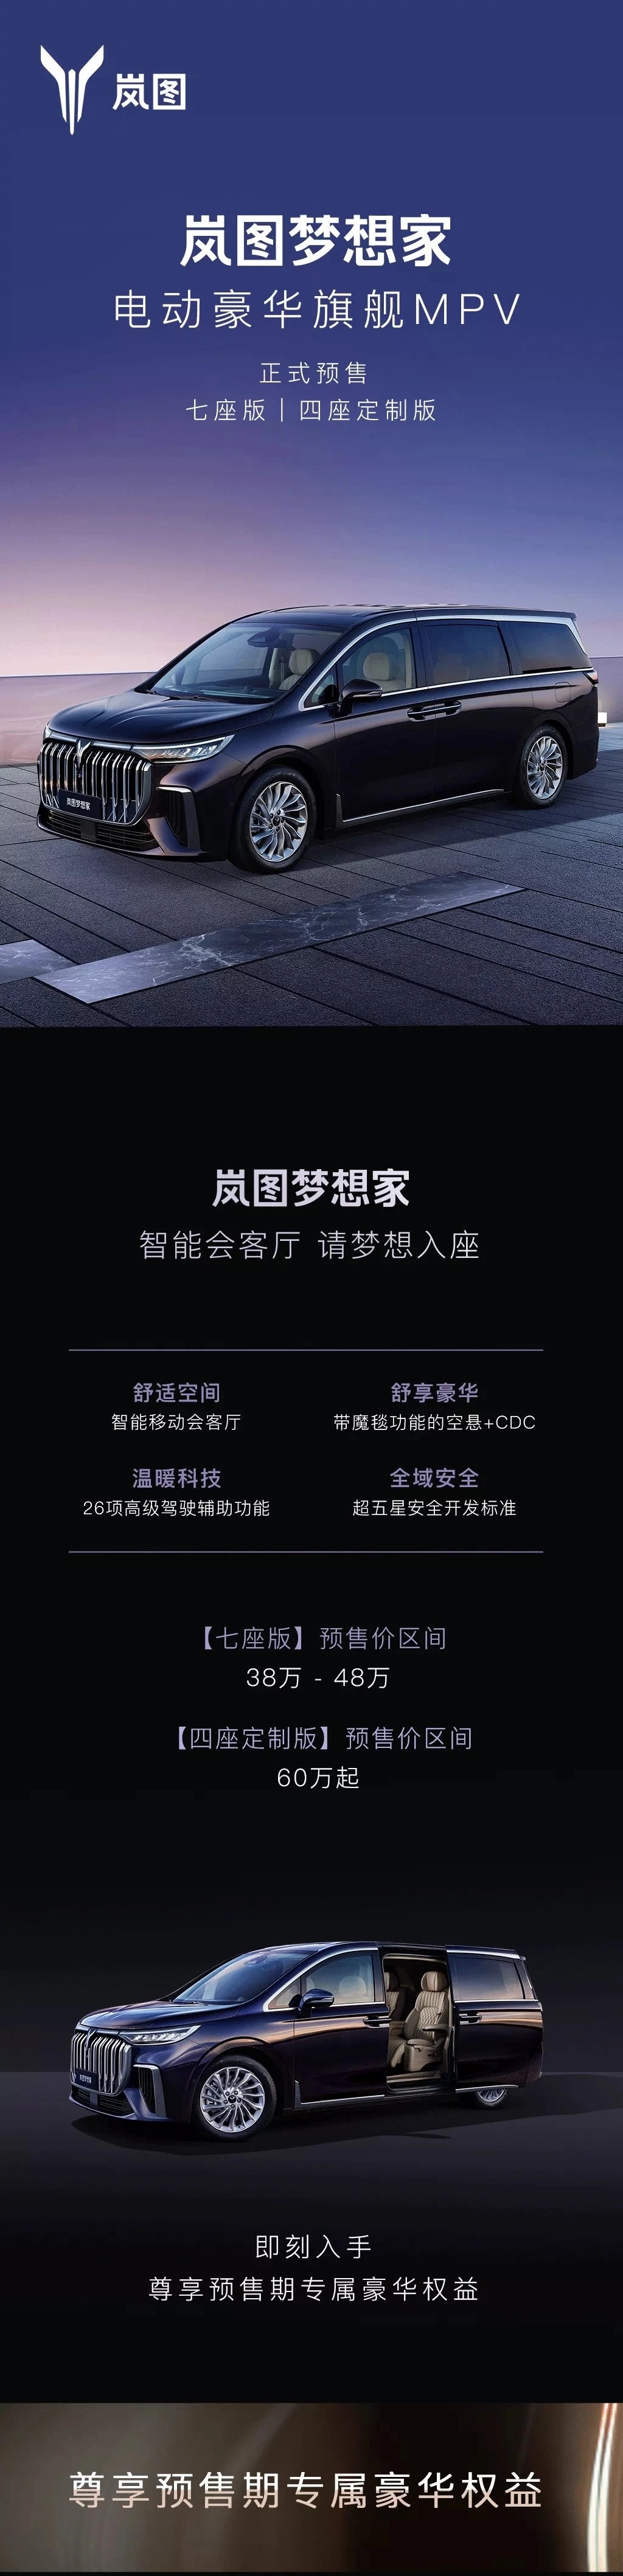 岚图梦想家开启预售 七座版38-48万、4座版60万